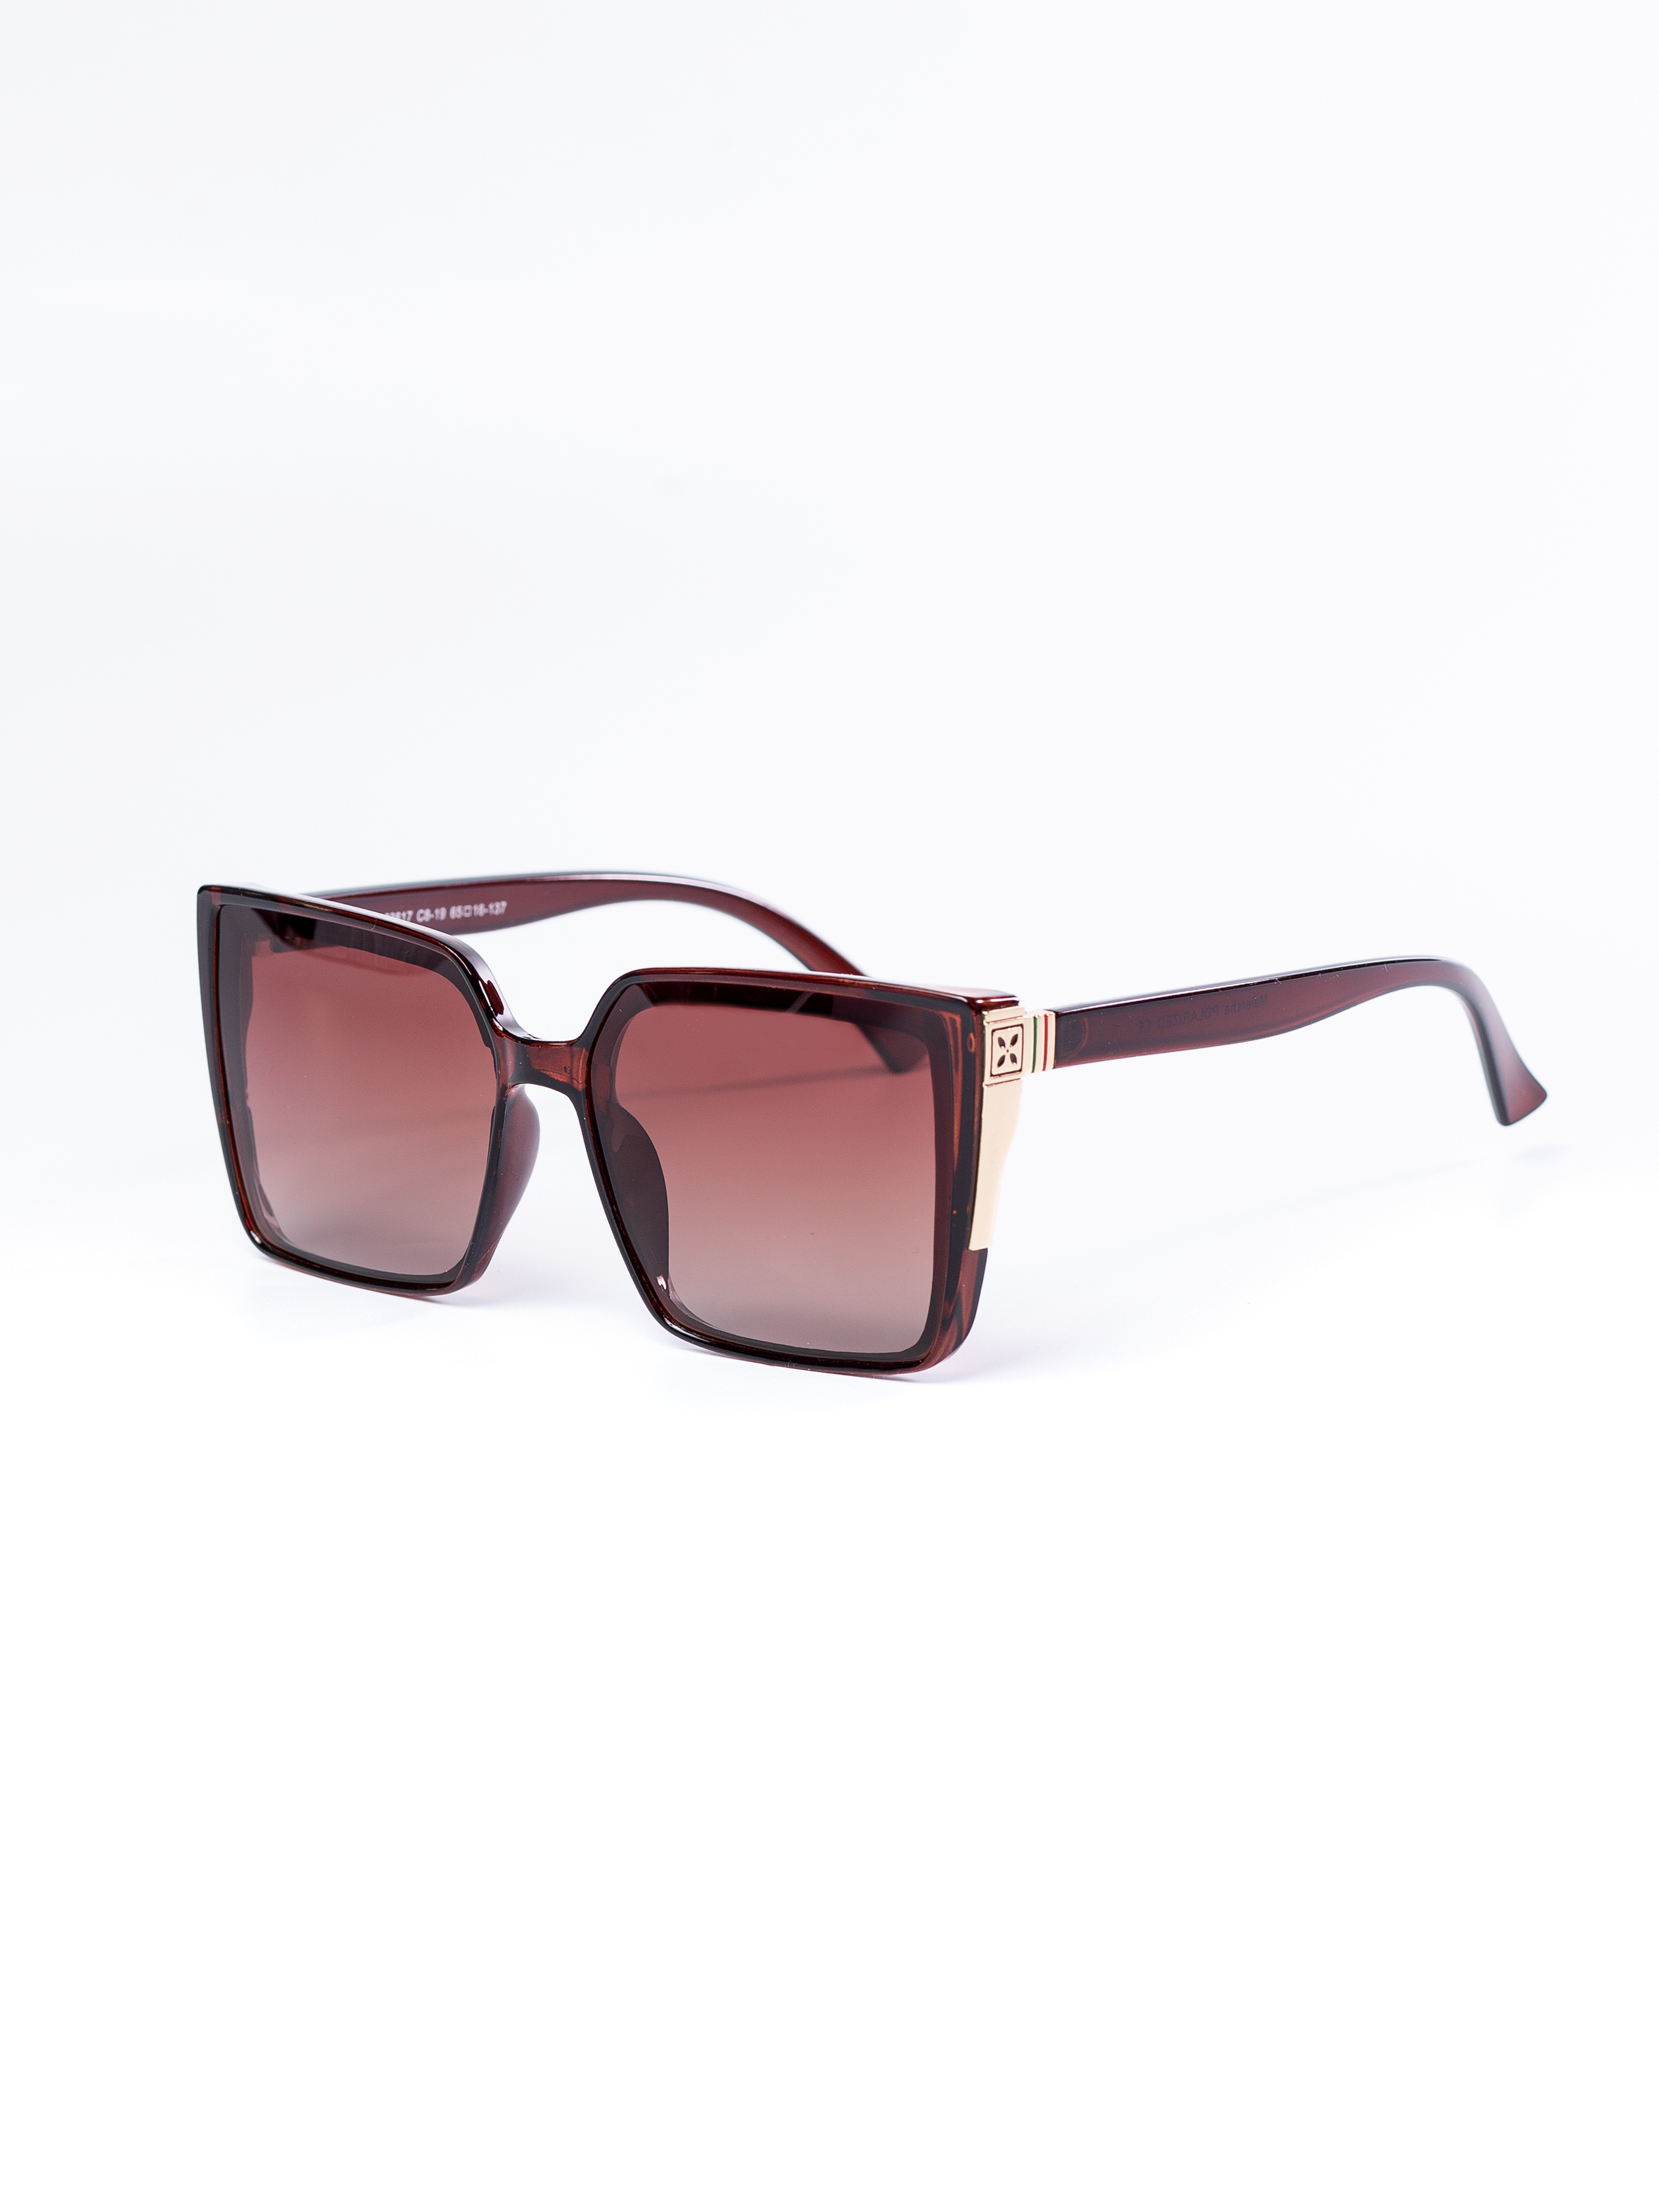 Солнцезащитные очки женские ezstore 1359 коричневые